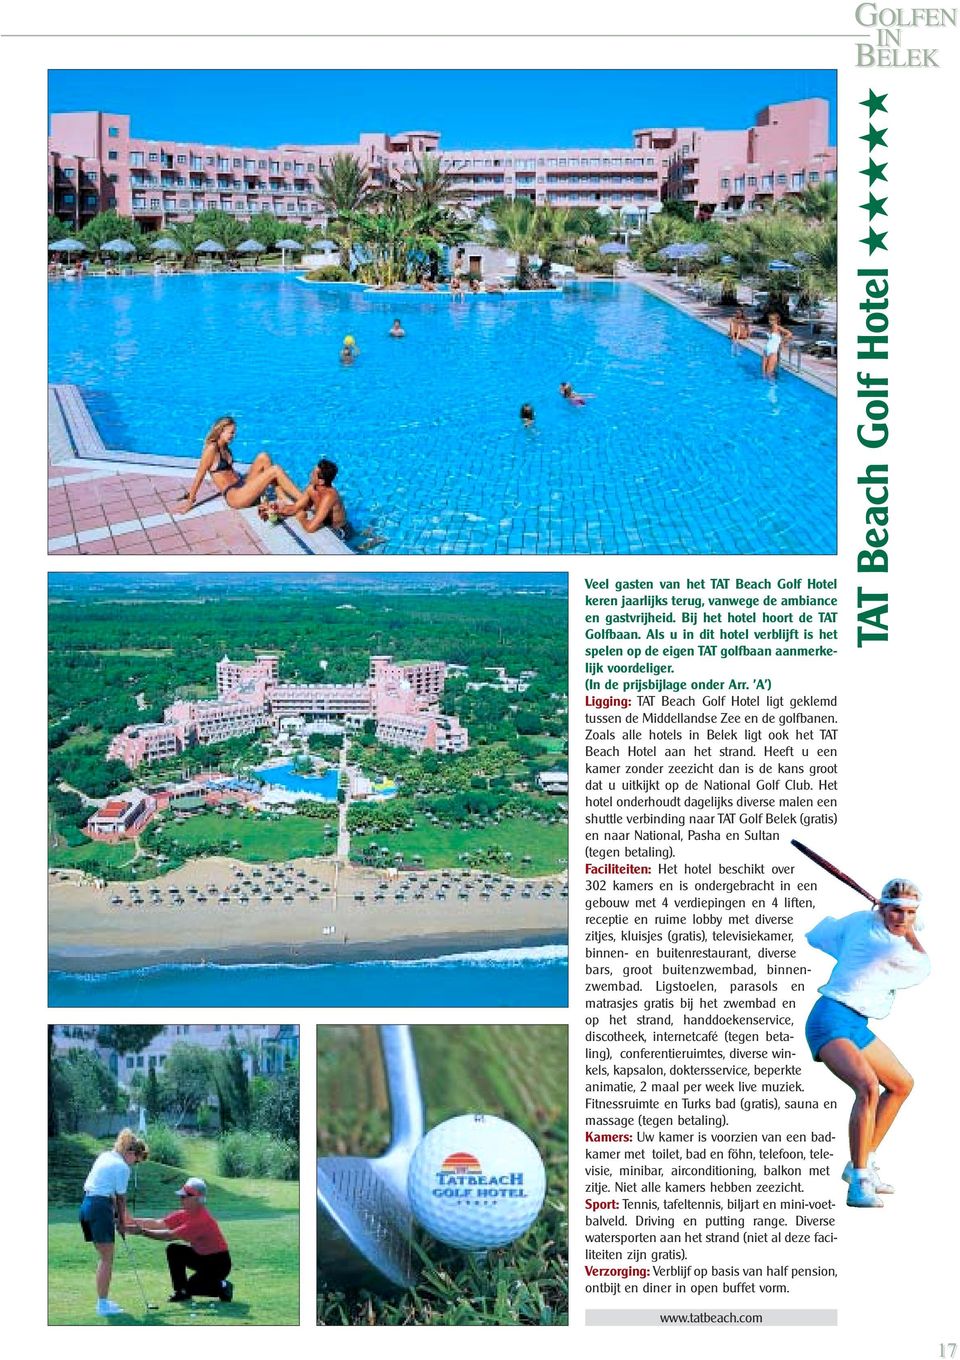 A ) Ligging: TAT Beach Golf Hotel ligt geklemd tussen de Middellandse Zee en de golfbanen. Zoals alle hotels in Belek ligt ook het TAT Beach Hotel aan het strand.